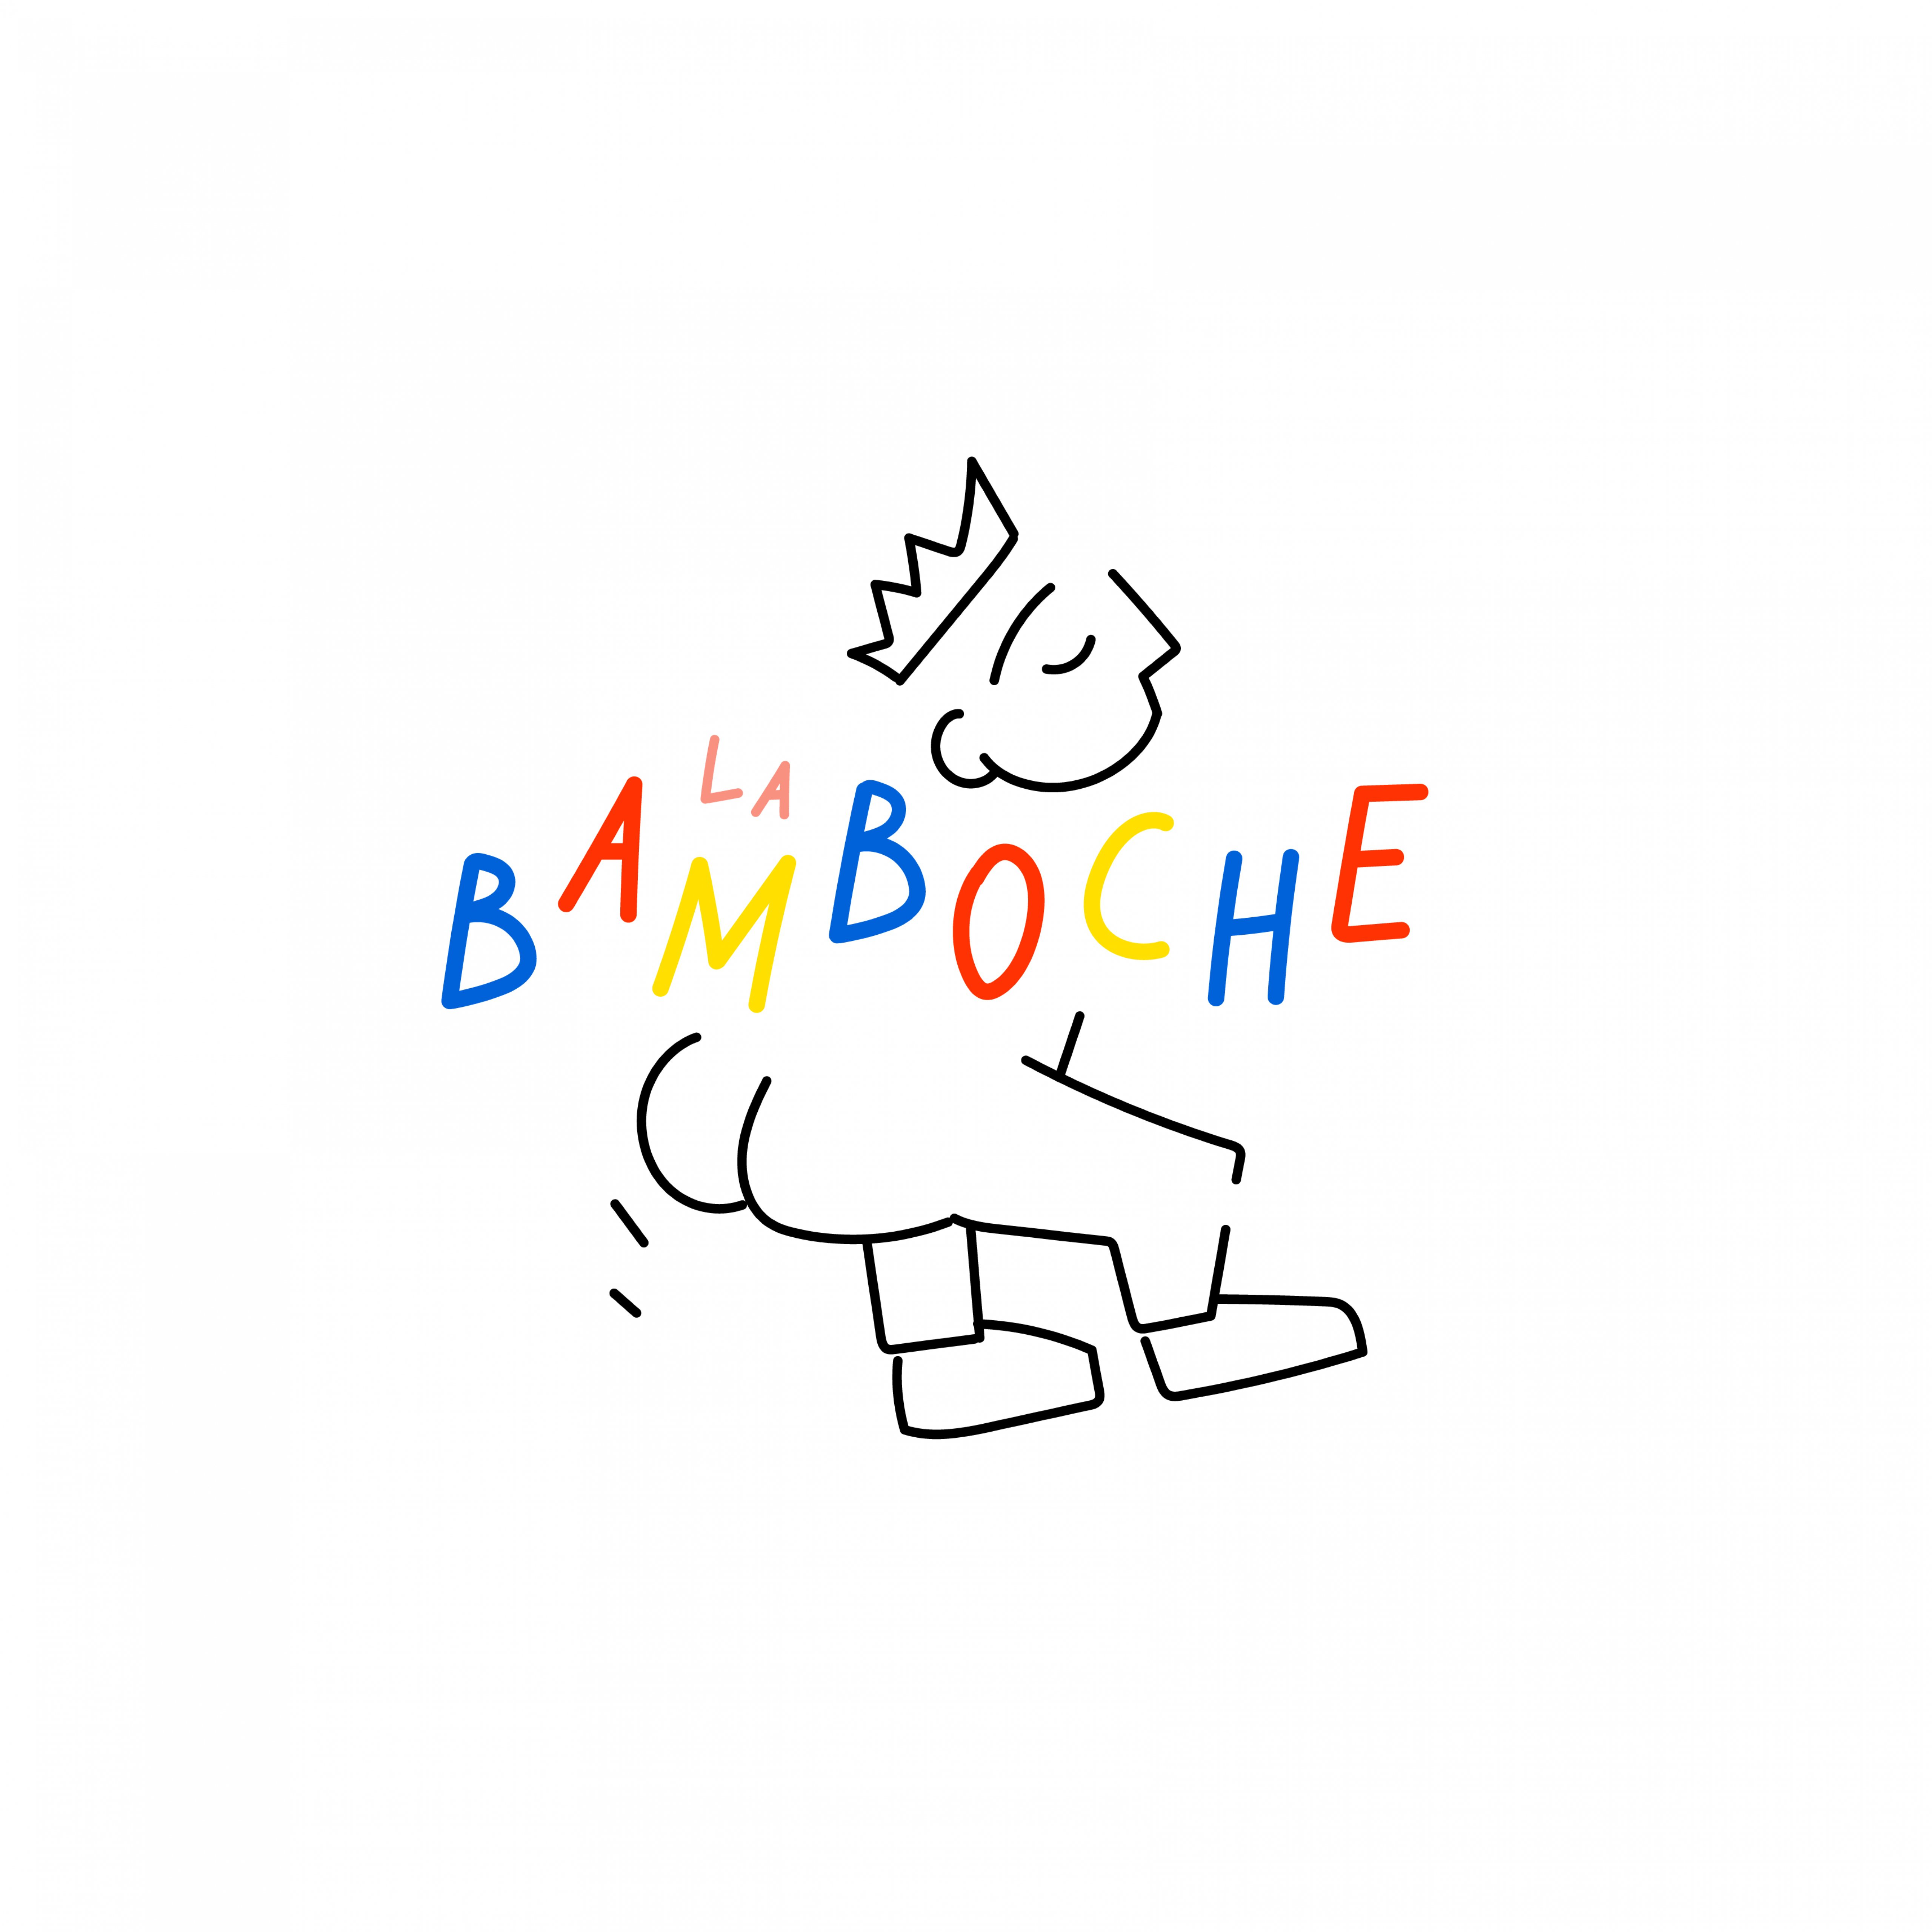 La Bamboche